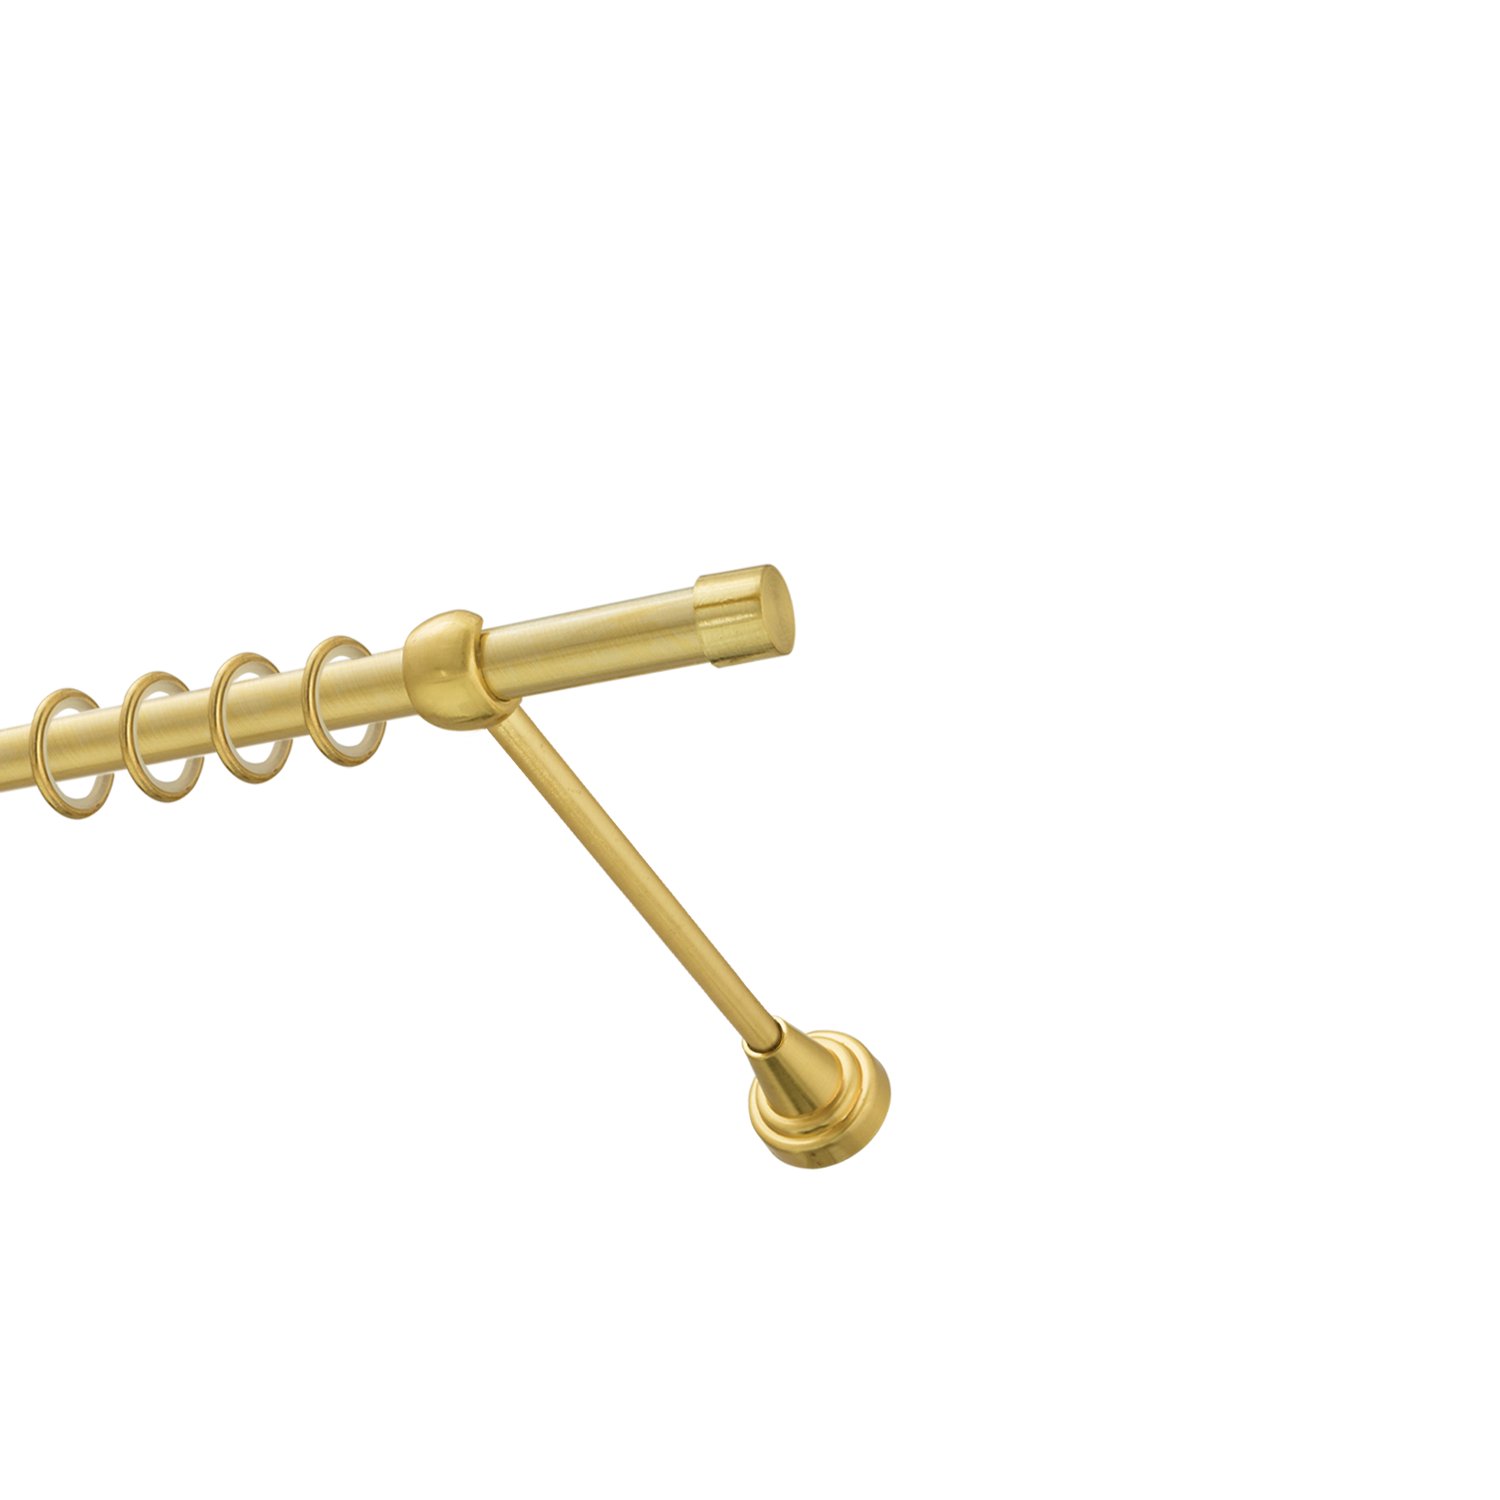 Металлический карниз для штор Заглушка, однорядный 16 мм, золото, гладкая штанга, длина 300 см - фото Wikidecor.ru